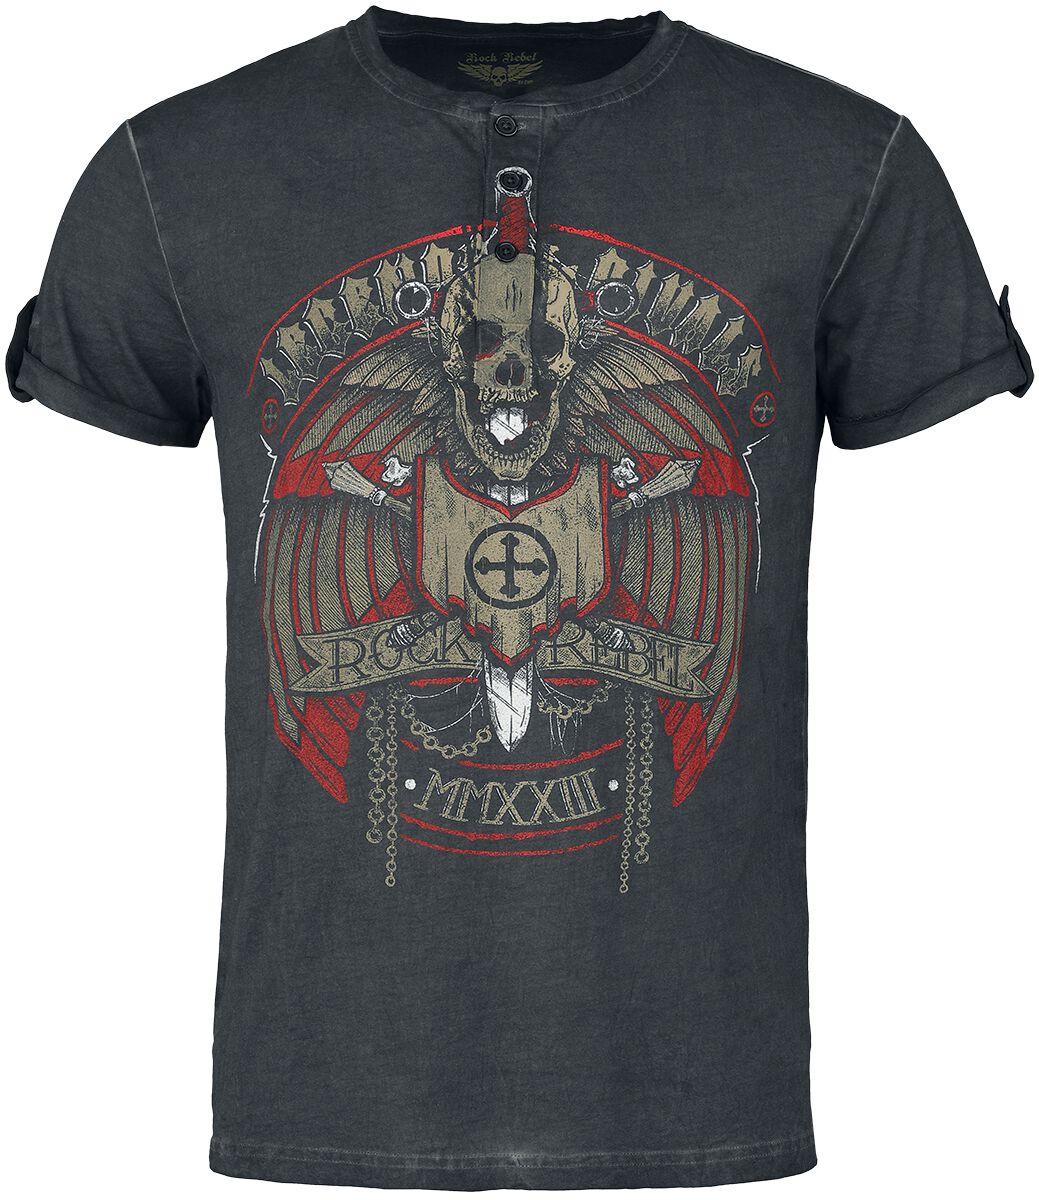 Rock Rebel by EMP - Rock T-Shirt - T-Shirt im Vintage Look - S bis L - für Männer - Größe M - grau